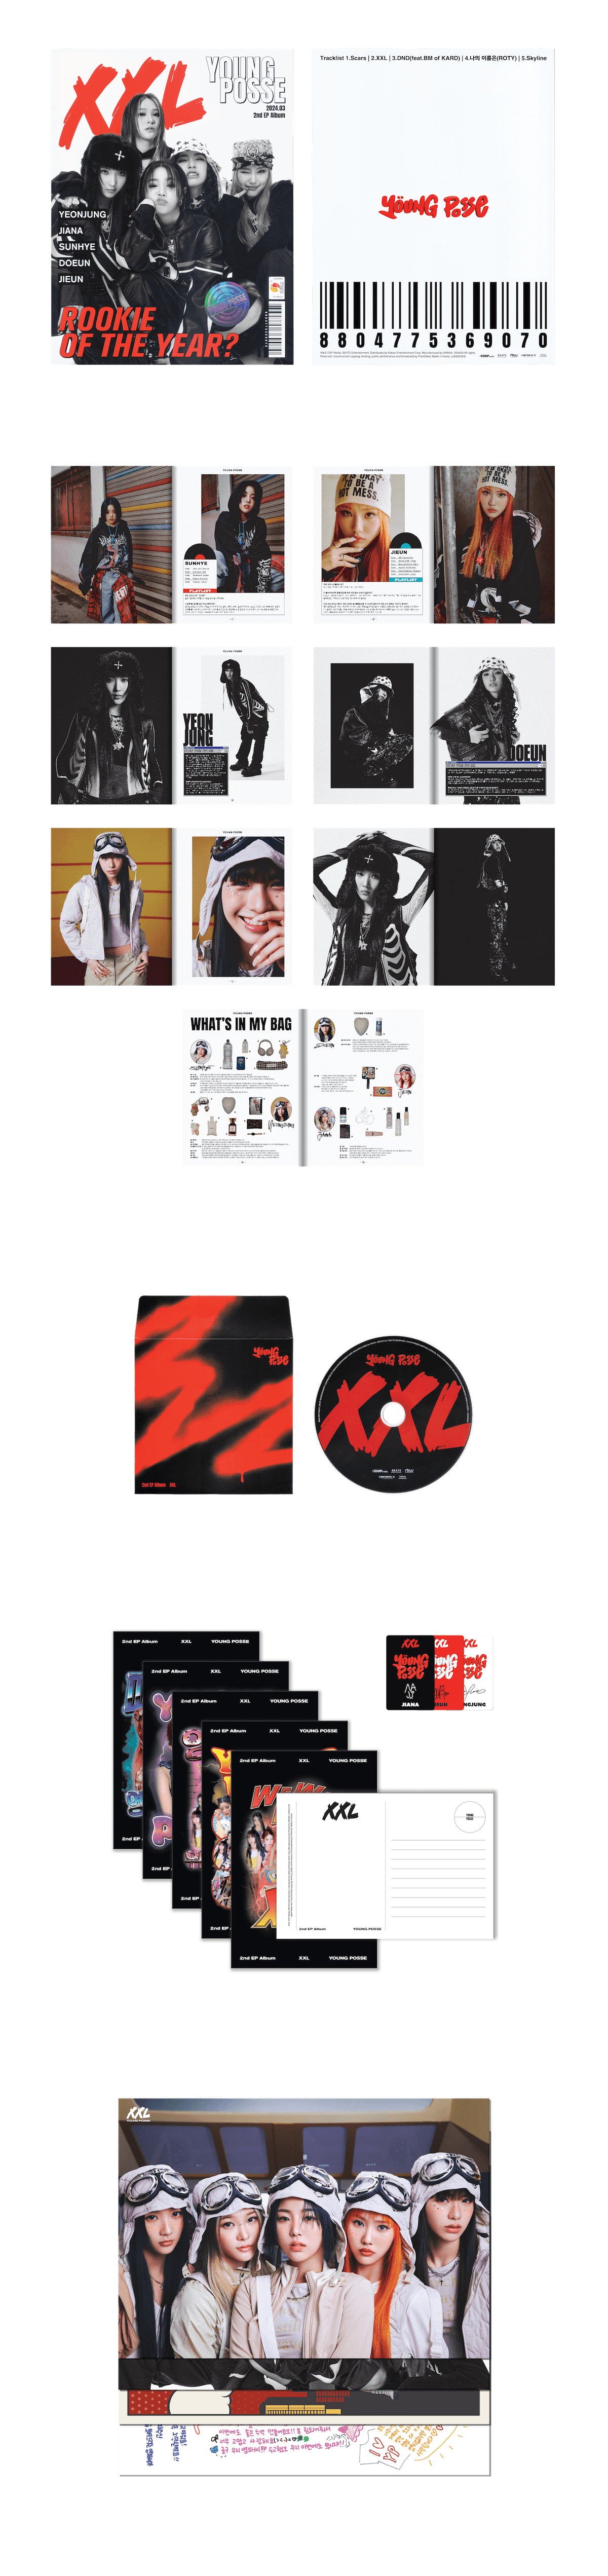 album cover Idol kpop graphic design  brand identity visual Graphic Designer design musicpackaging